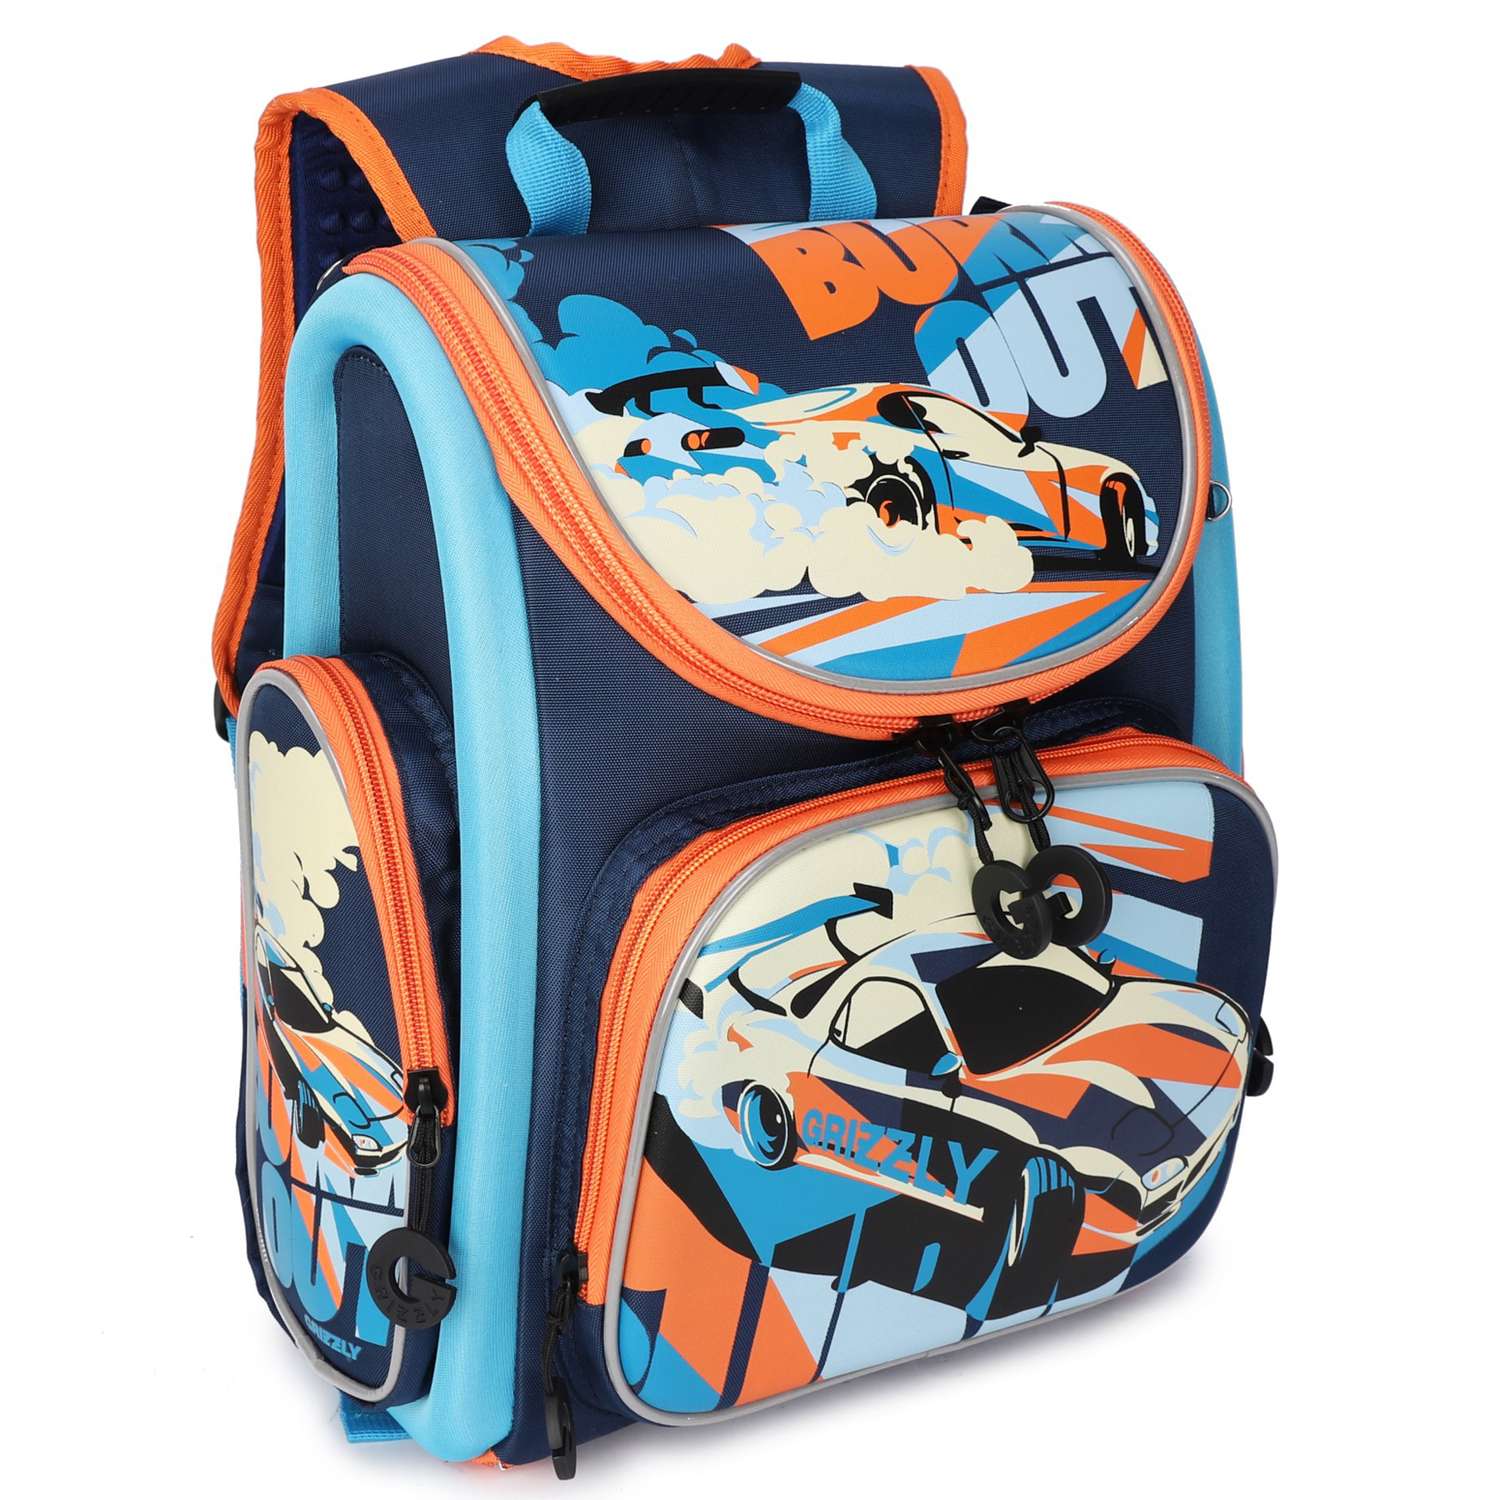 Рюкзак школьный Grizzly Авто Темно-синий-Голубой RA-970-3/1 - фото 2